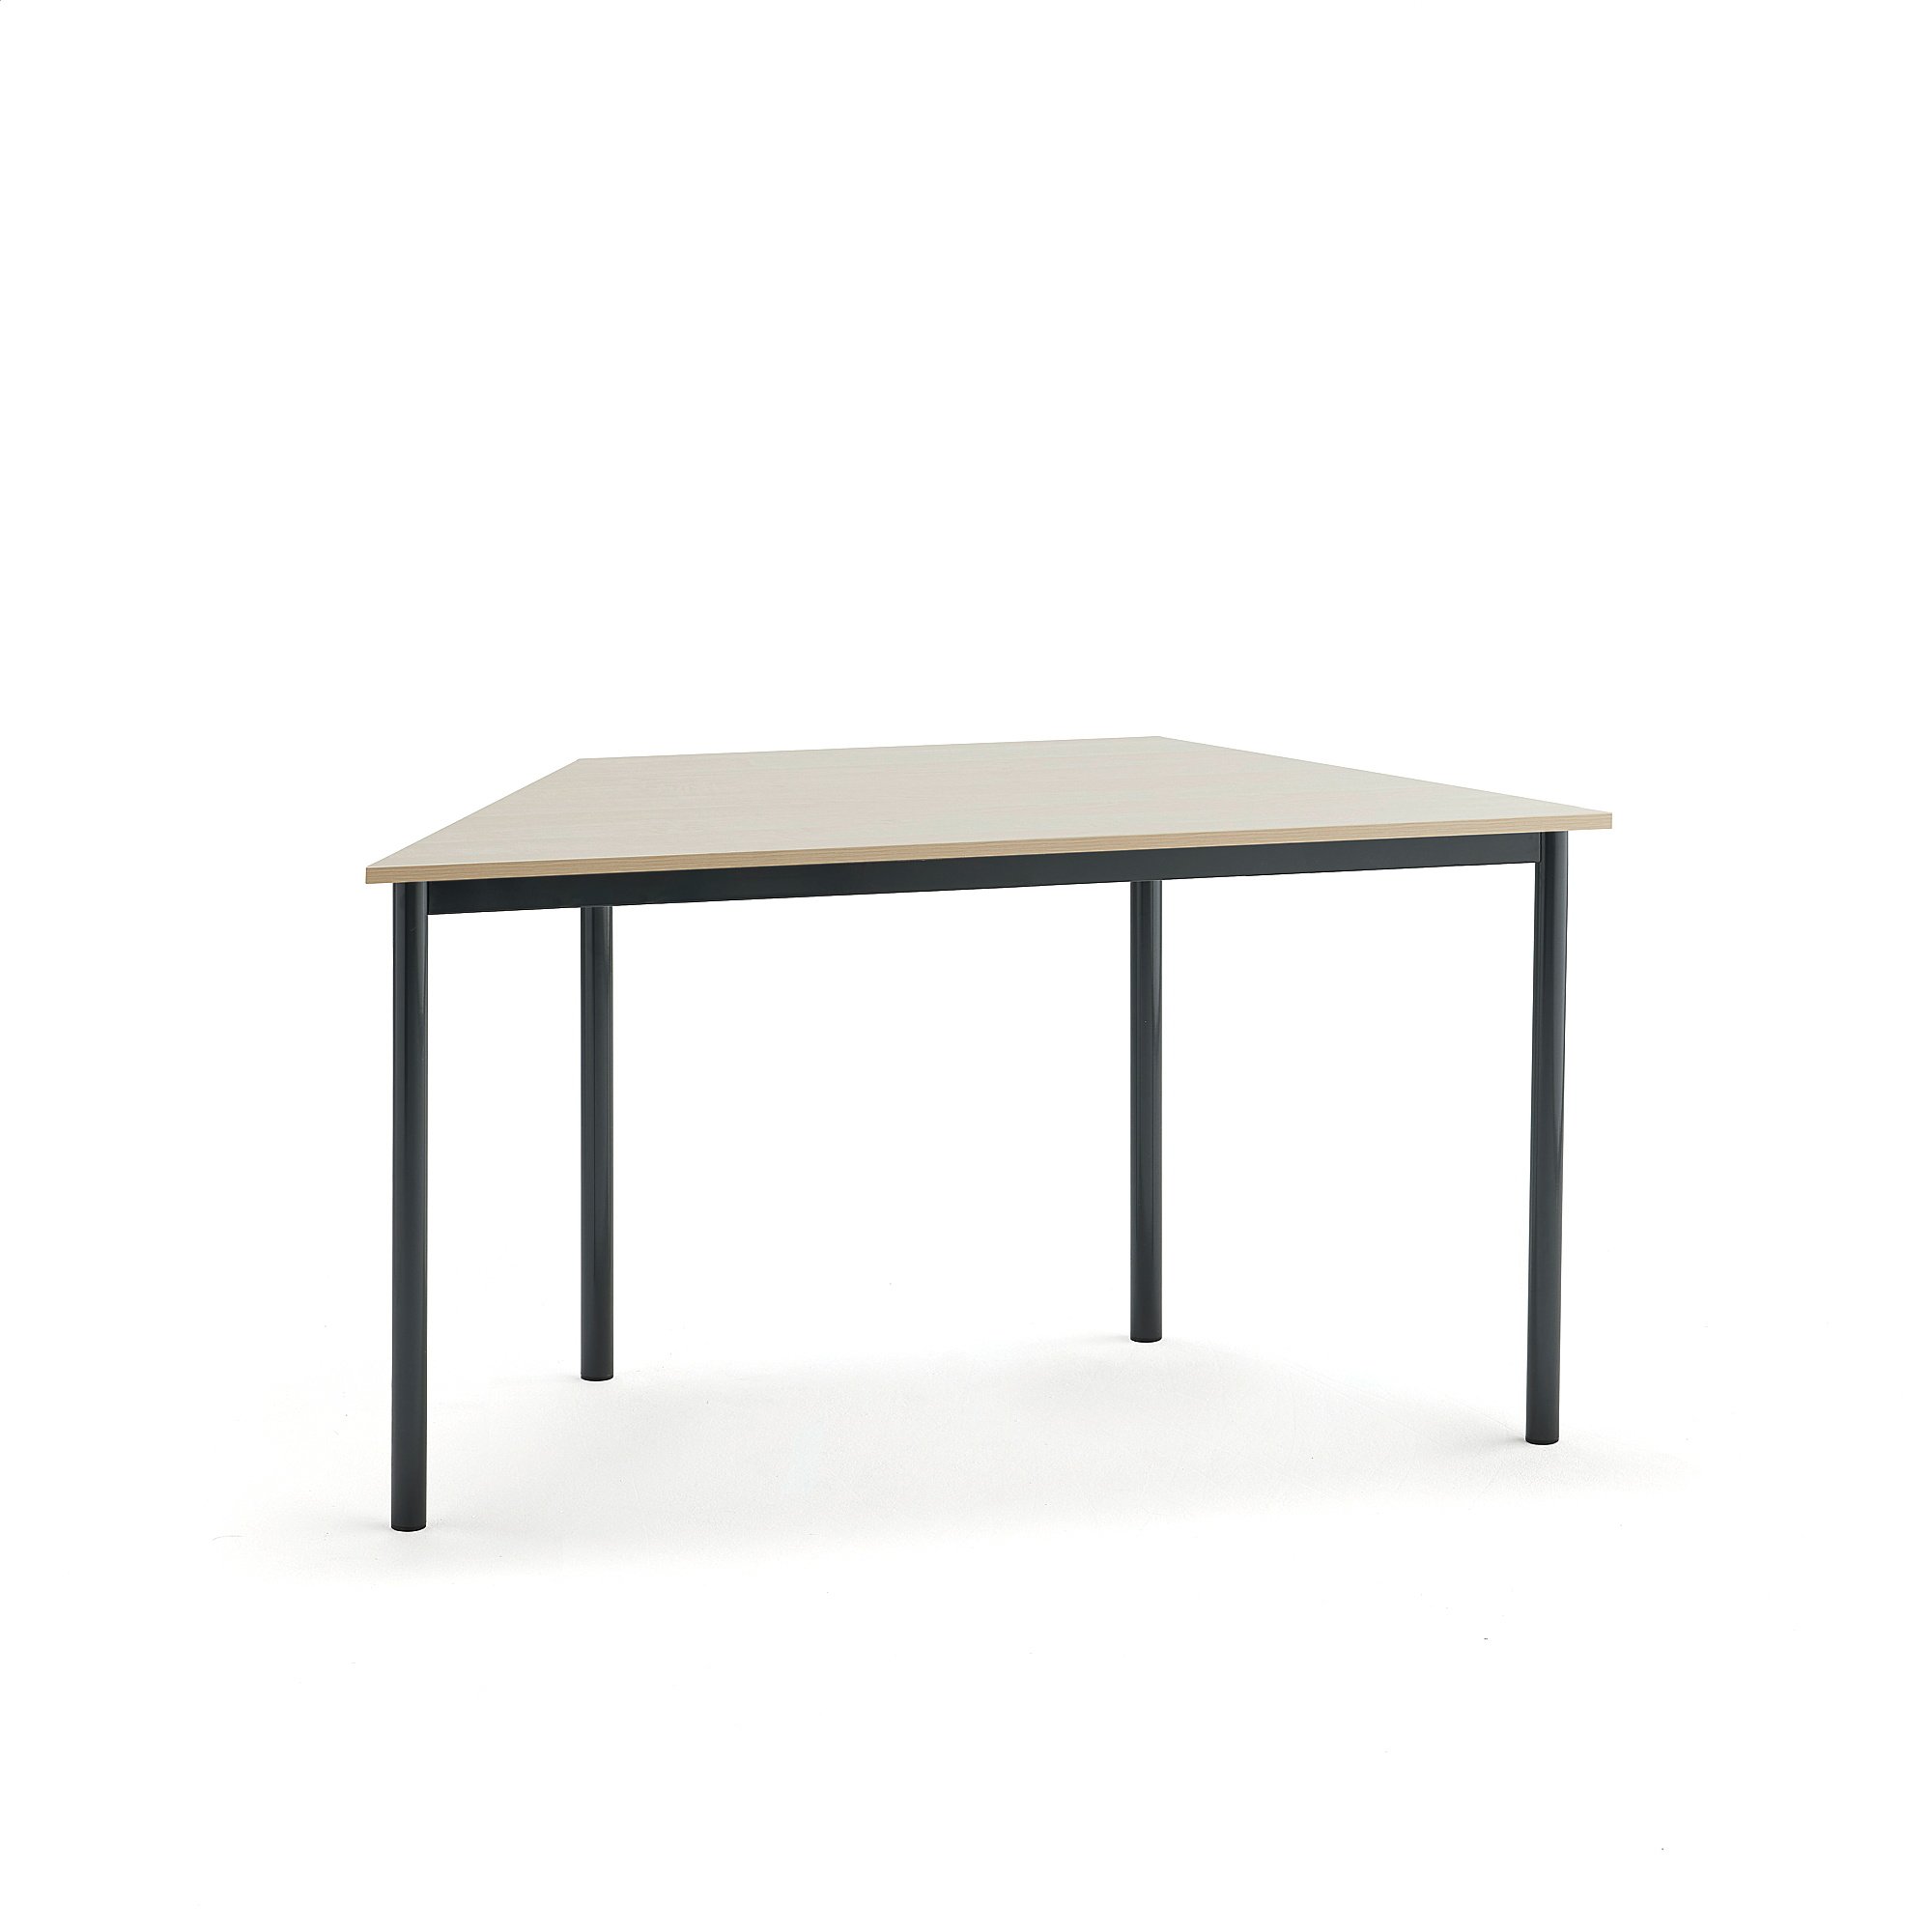 Stůl BORÅS TRAPETS, 1400x700x720 mm, antracitově šedé nohy, HPL deska, bříza